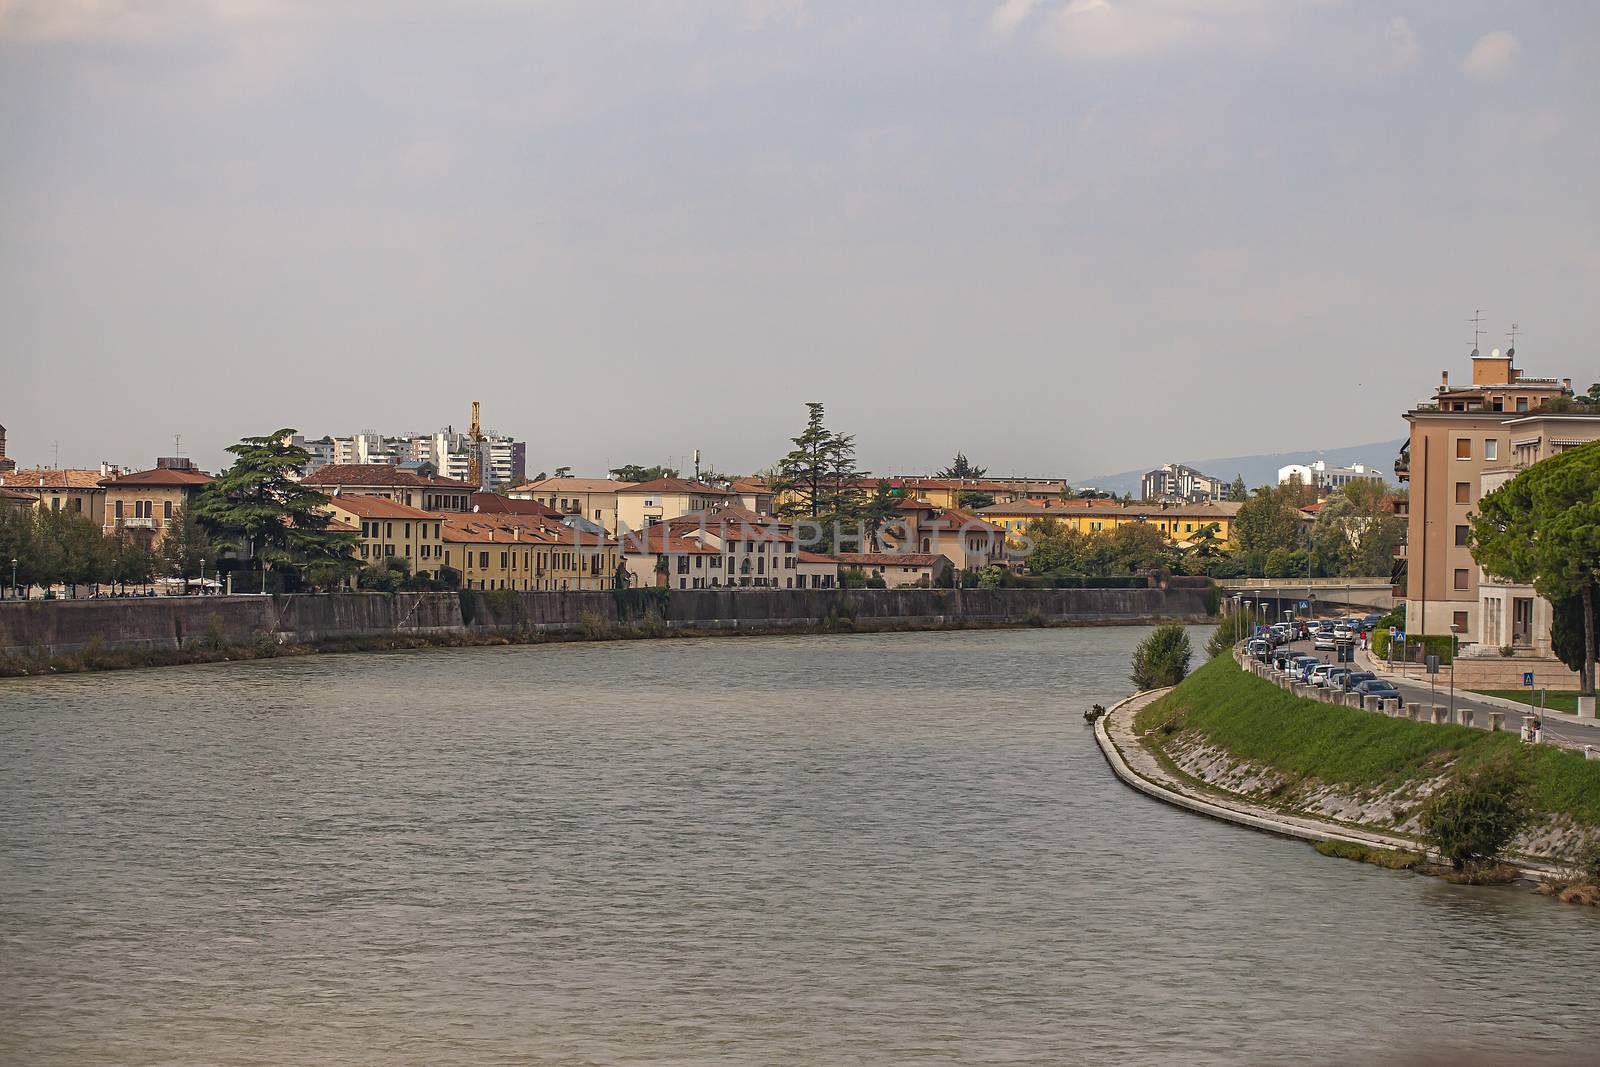 Adige river in Verona in Italy 2 by pippocarlot